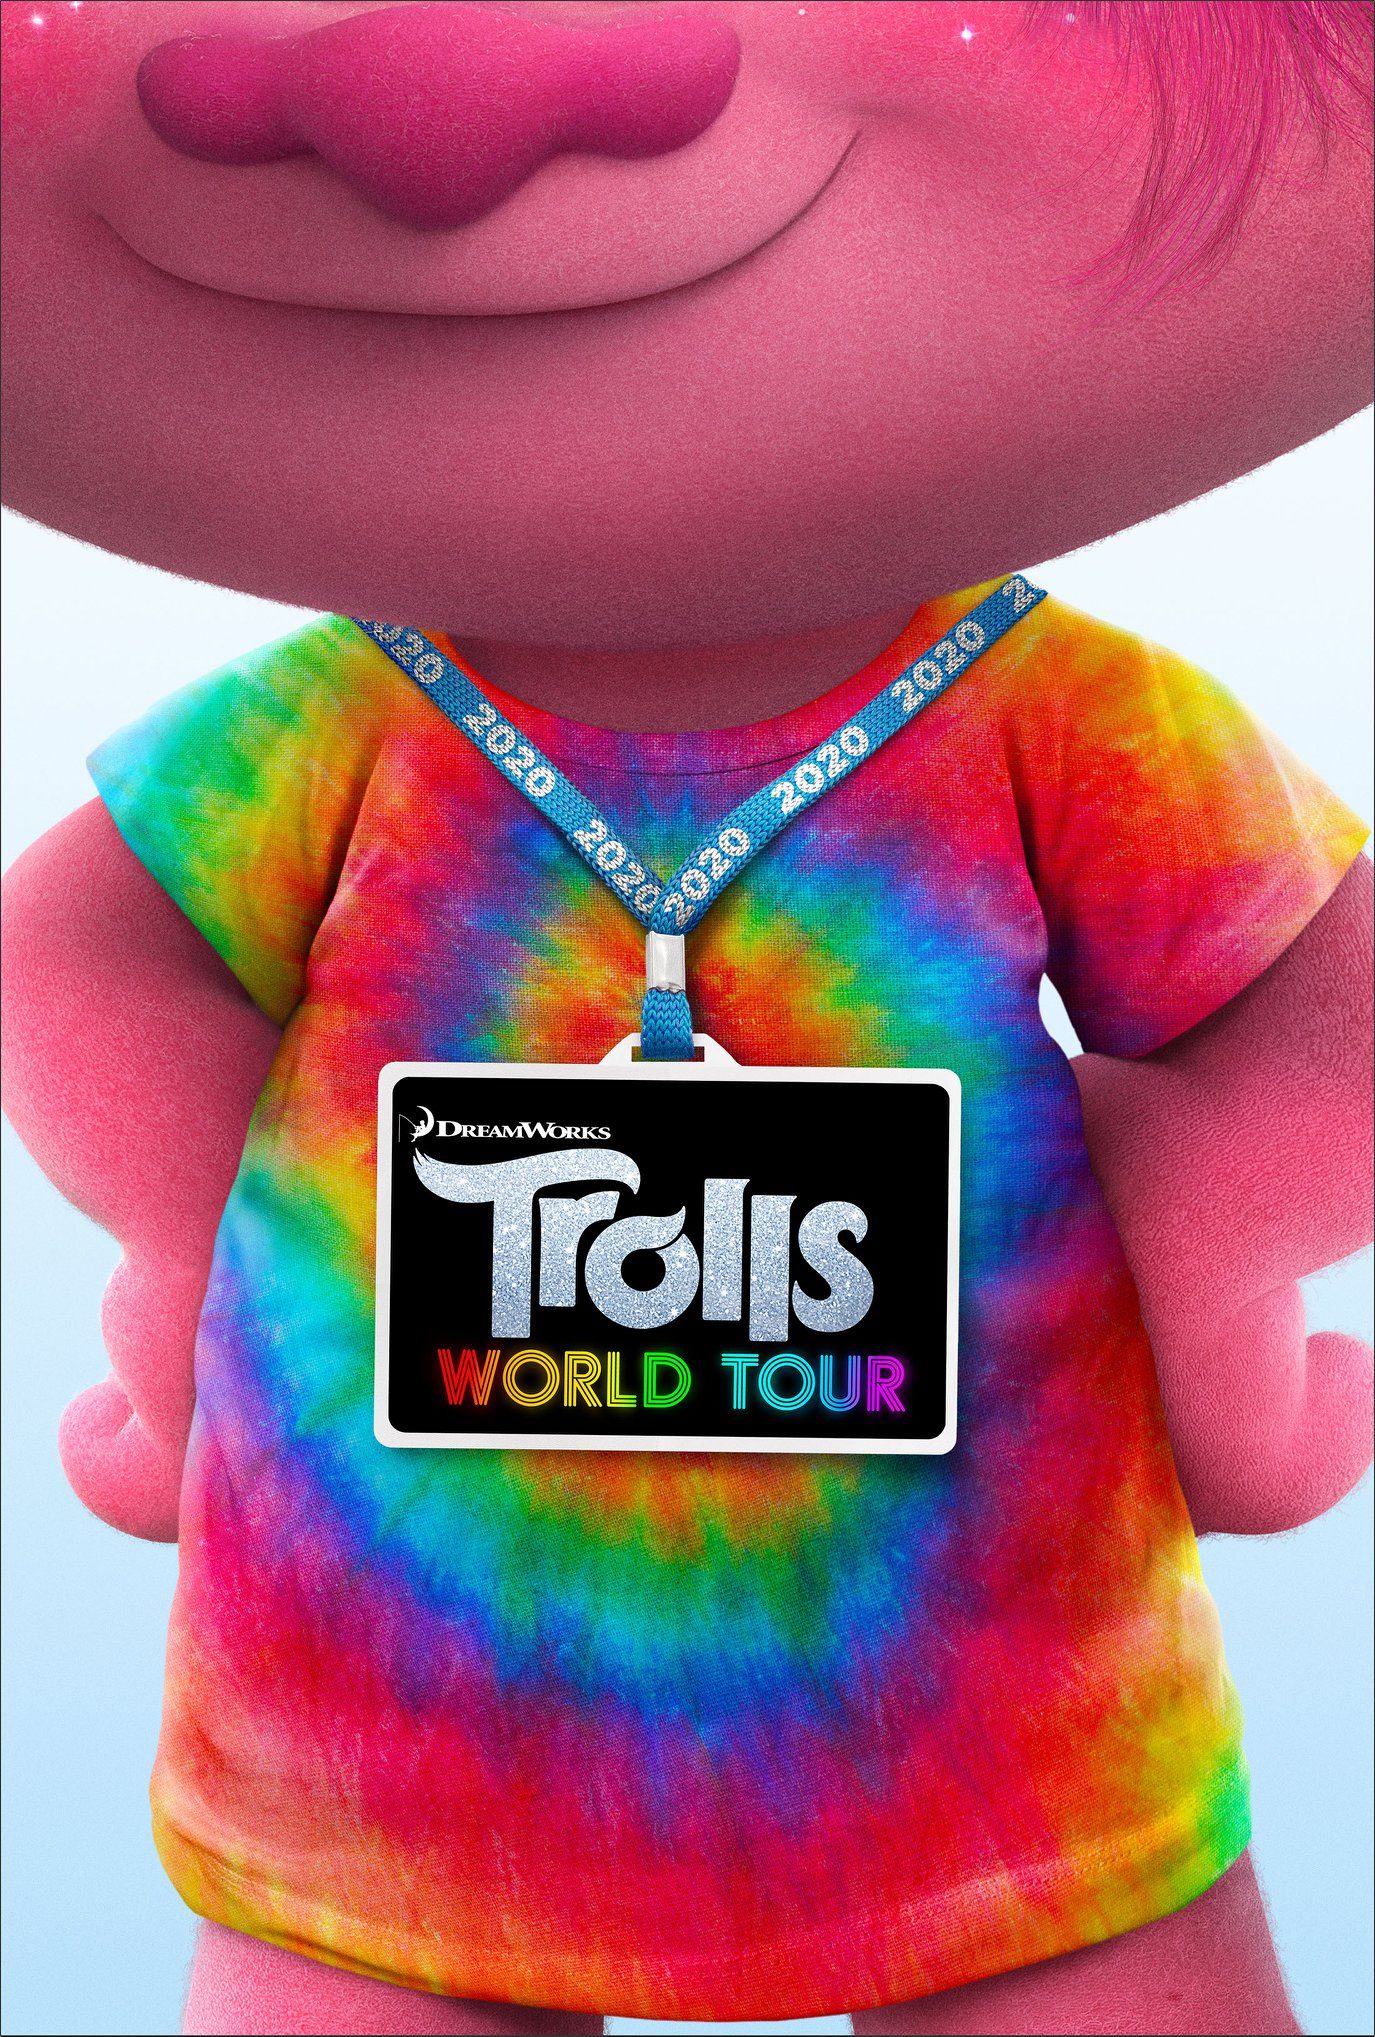 Trolls World Tour | Dreamworks Animation Wiki | FANDOM powered by Wikia